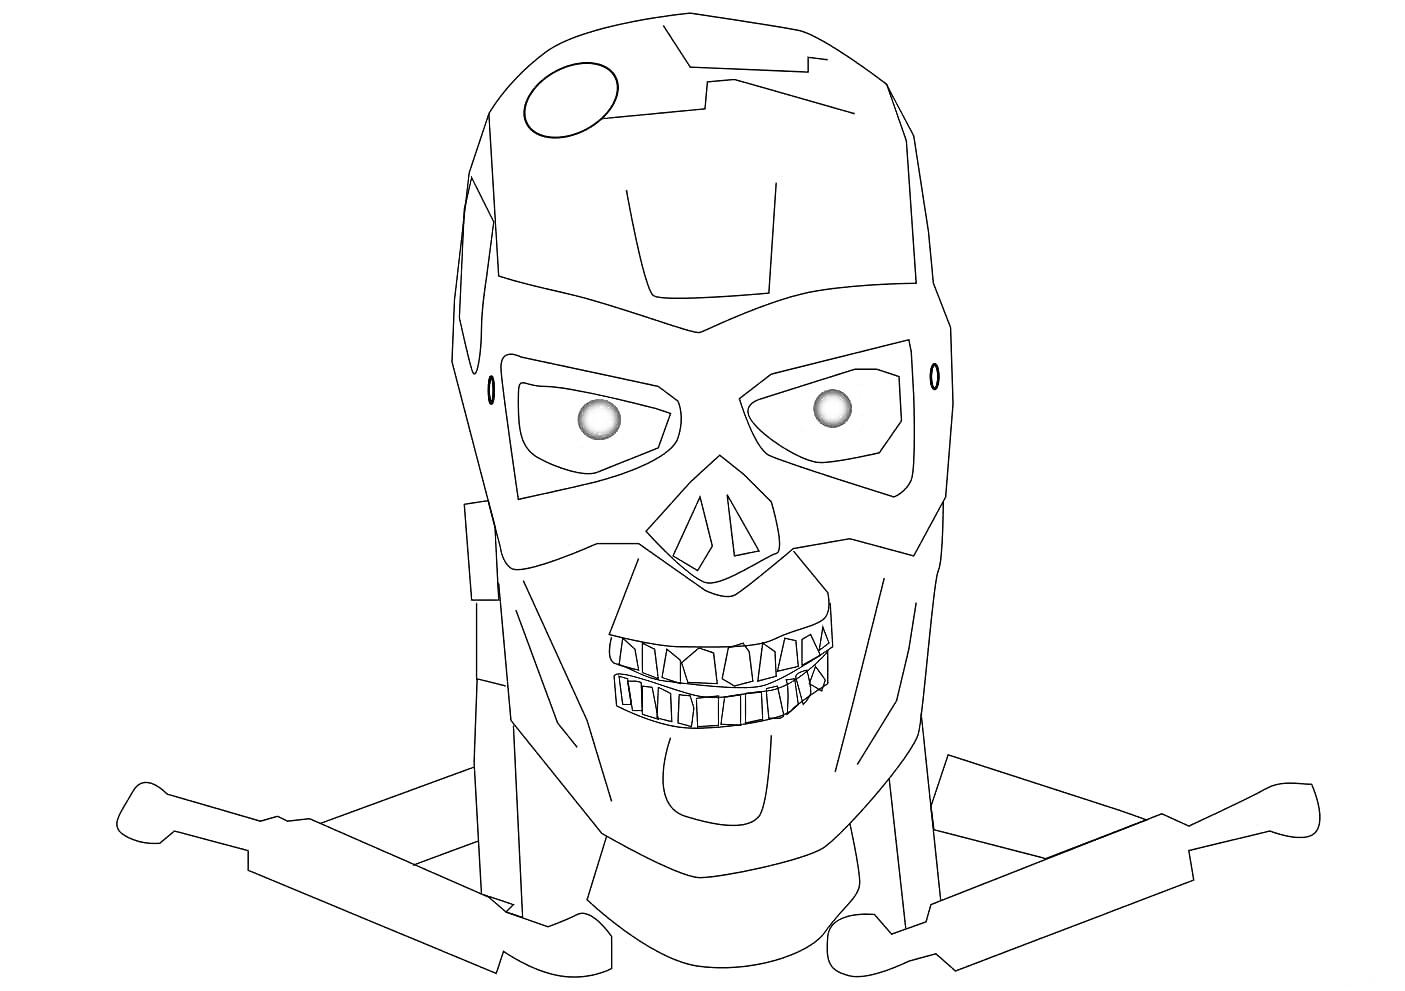 Раскраска Голова Терминатора с красными глазами, с элементами черепа и металлических деталей